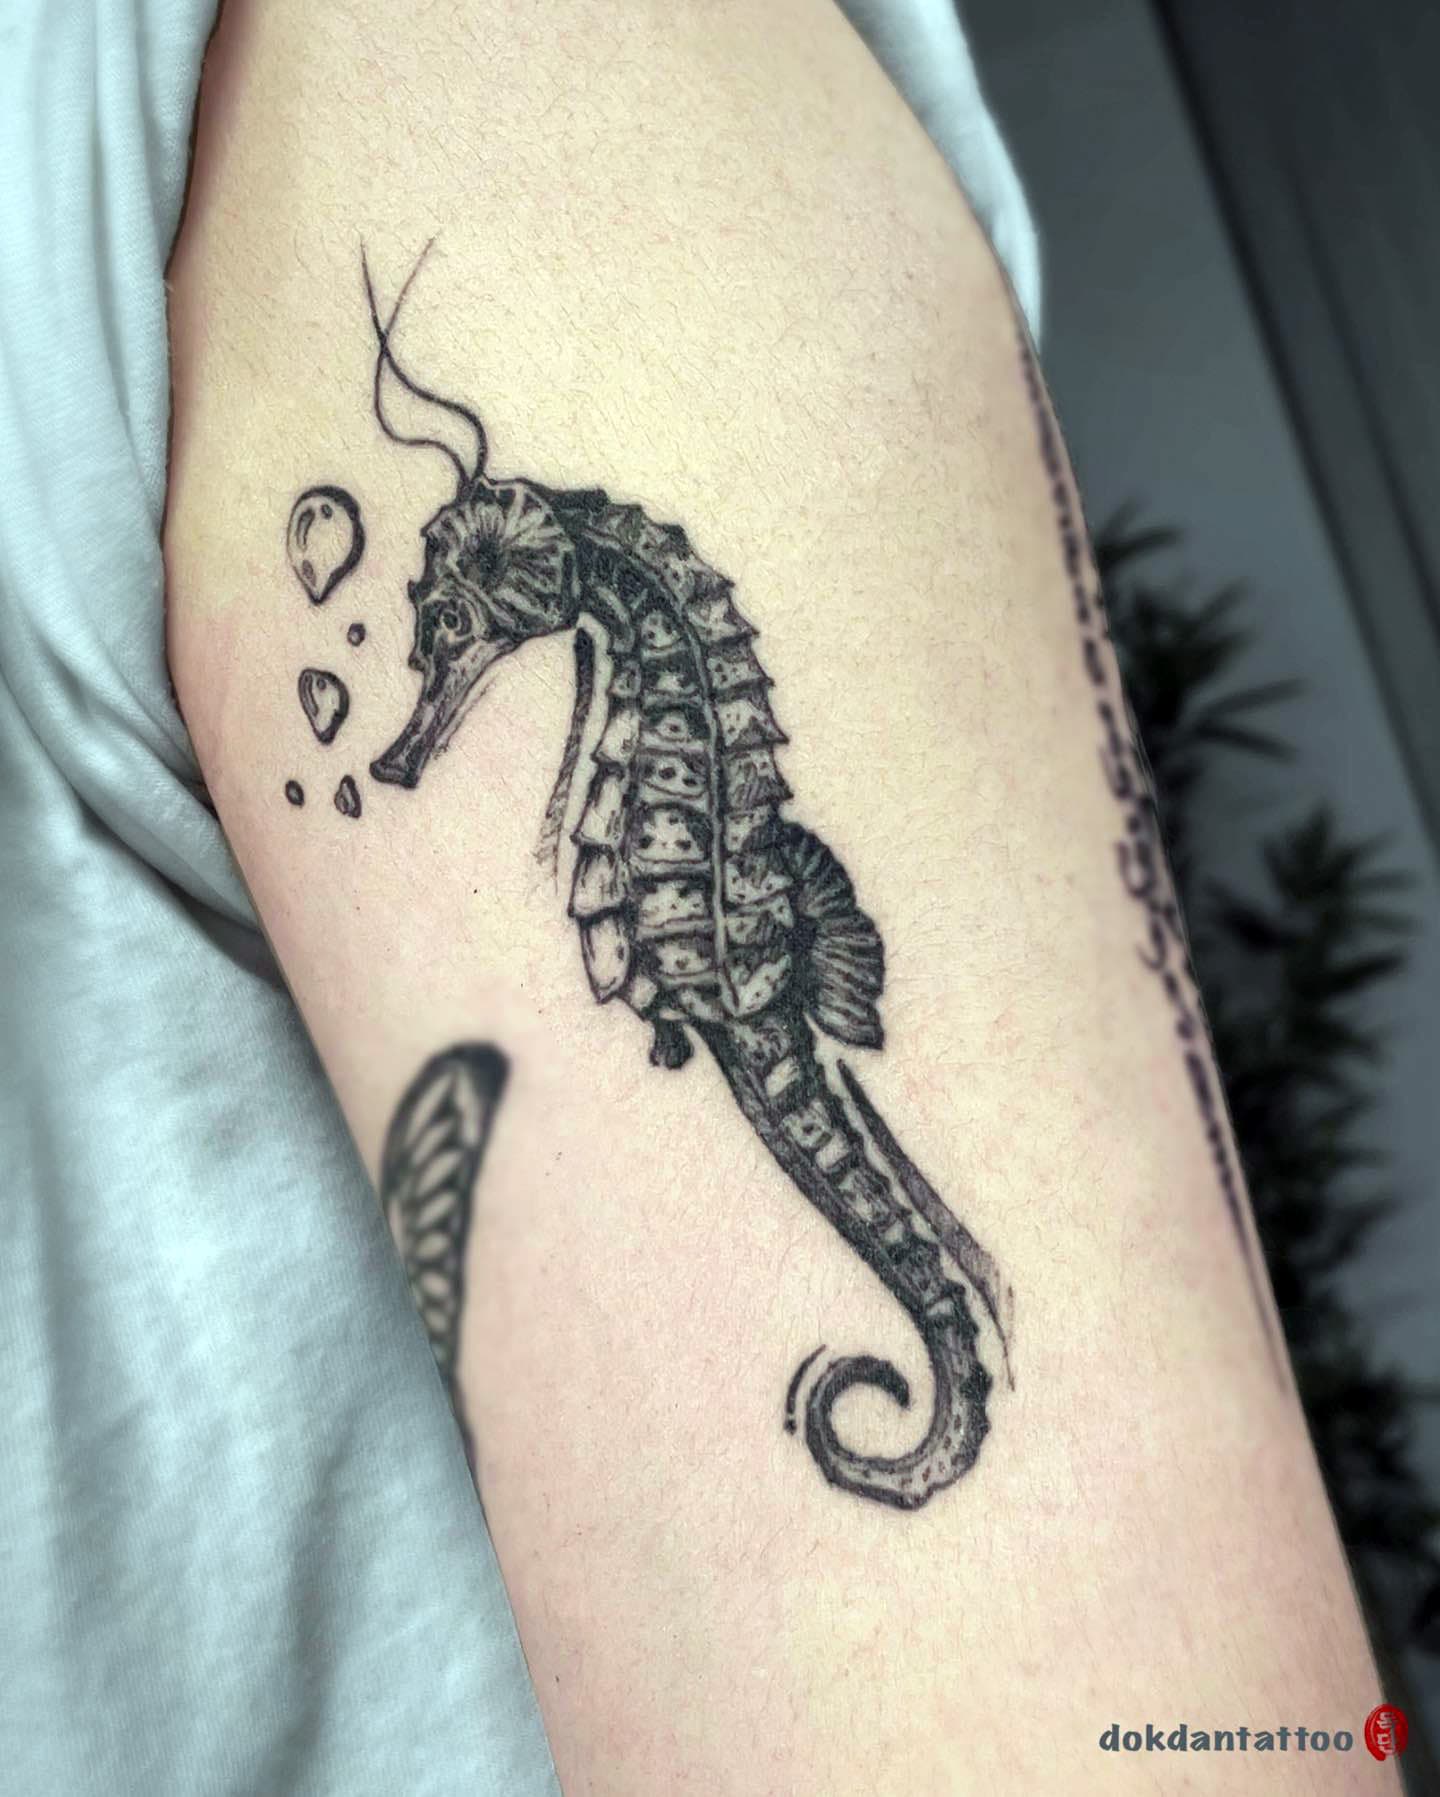 Seahorse tattoo ideas 9